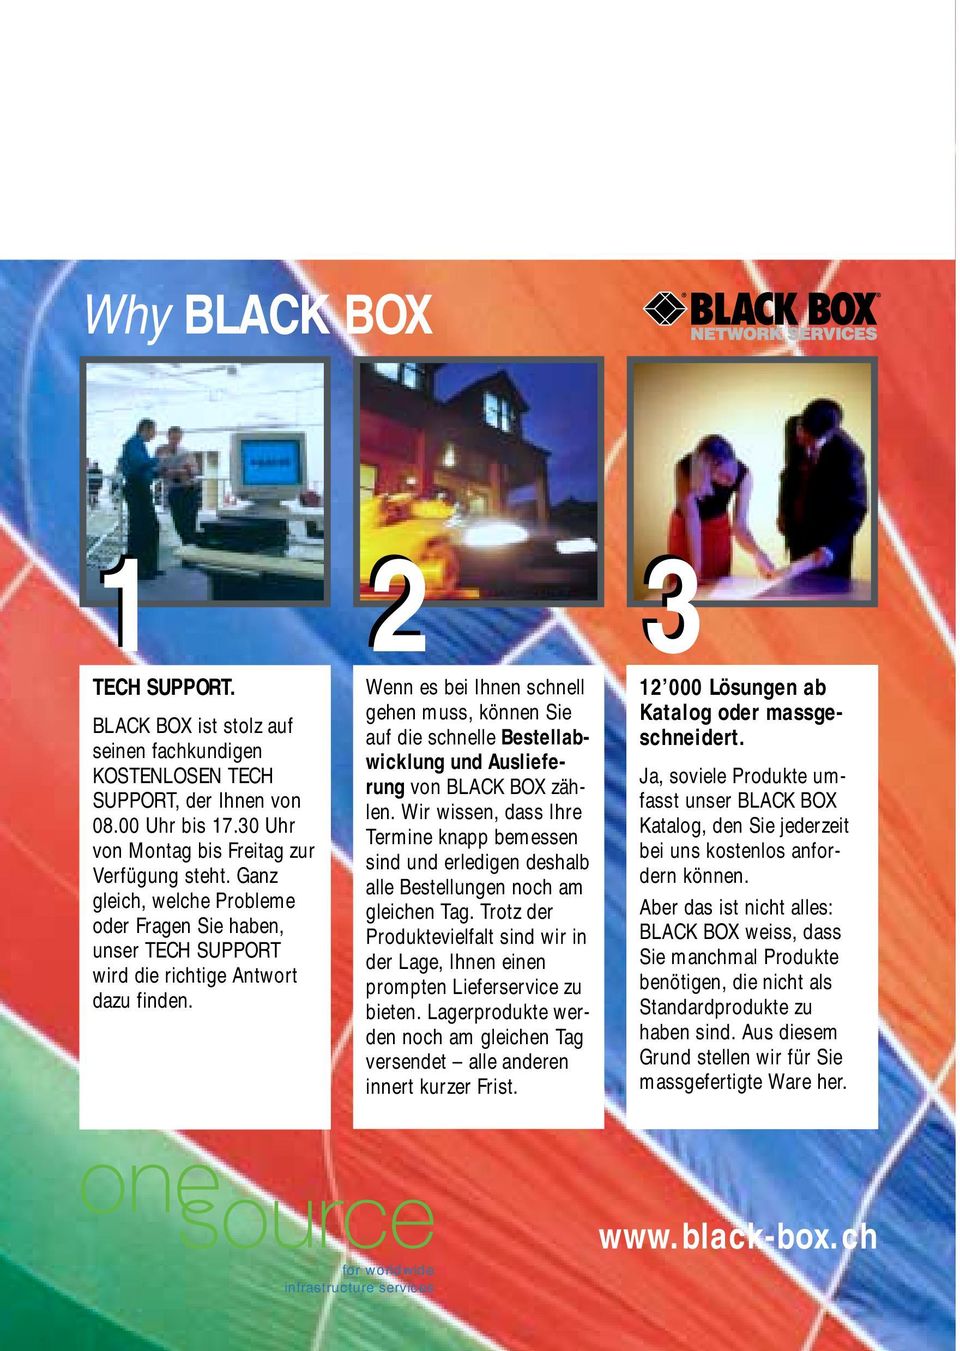 Wenn es bei Ihnen schnell gehen muss, können Sie auf die schnelle Bestellabwicklung und Auslieferung von BLACK BOX zählen.